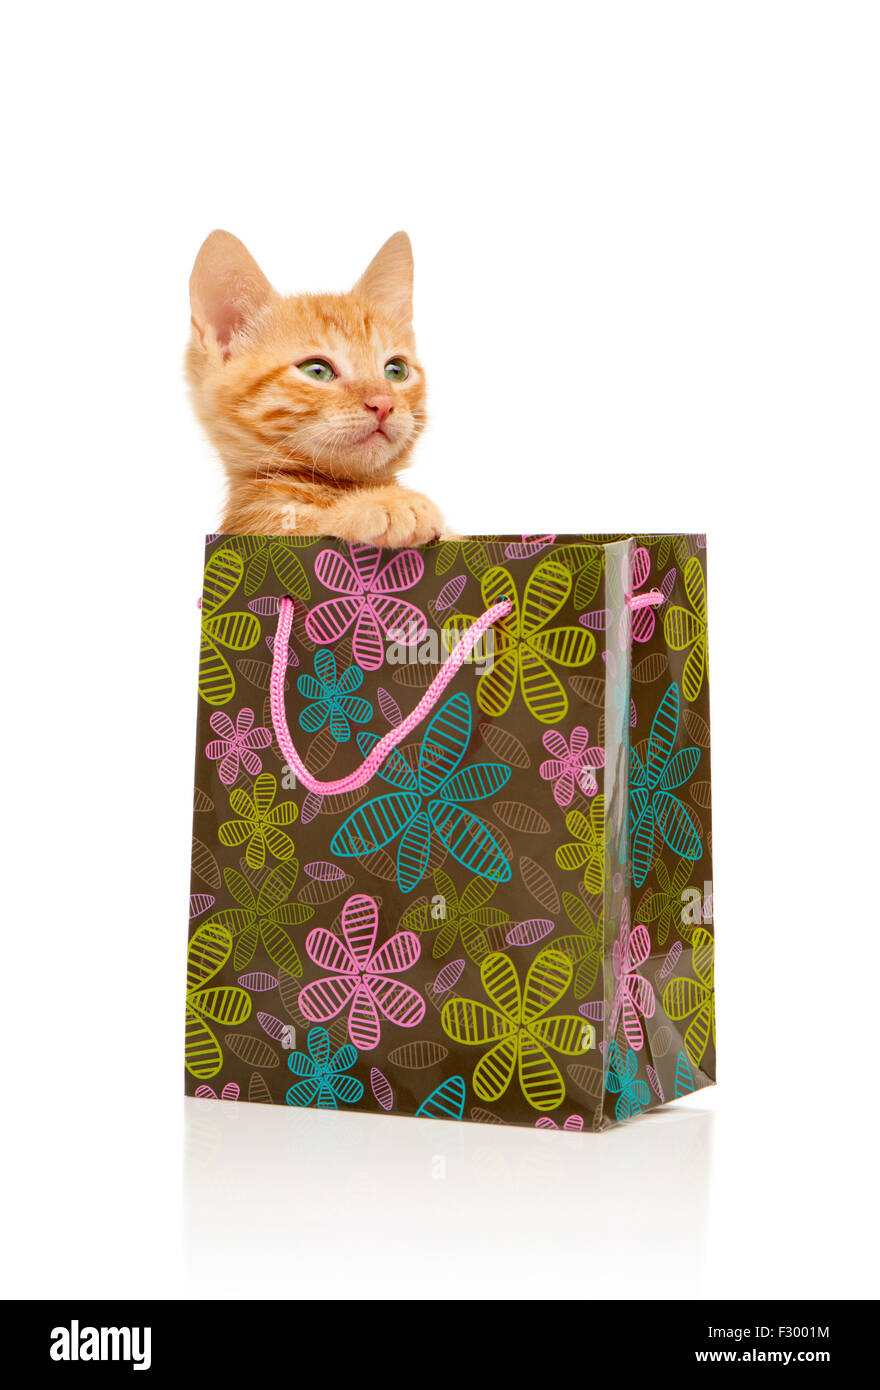 Little red glamour sérieusement chaton assis en fleur, vert, rose et bleu sac de shopping, isolé sur fond blanc Banque D'Images